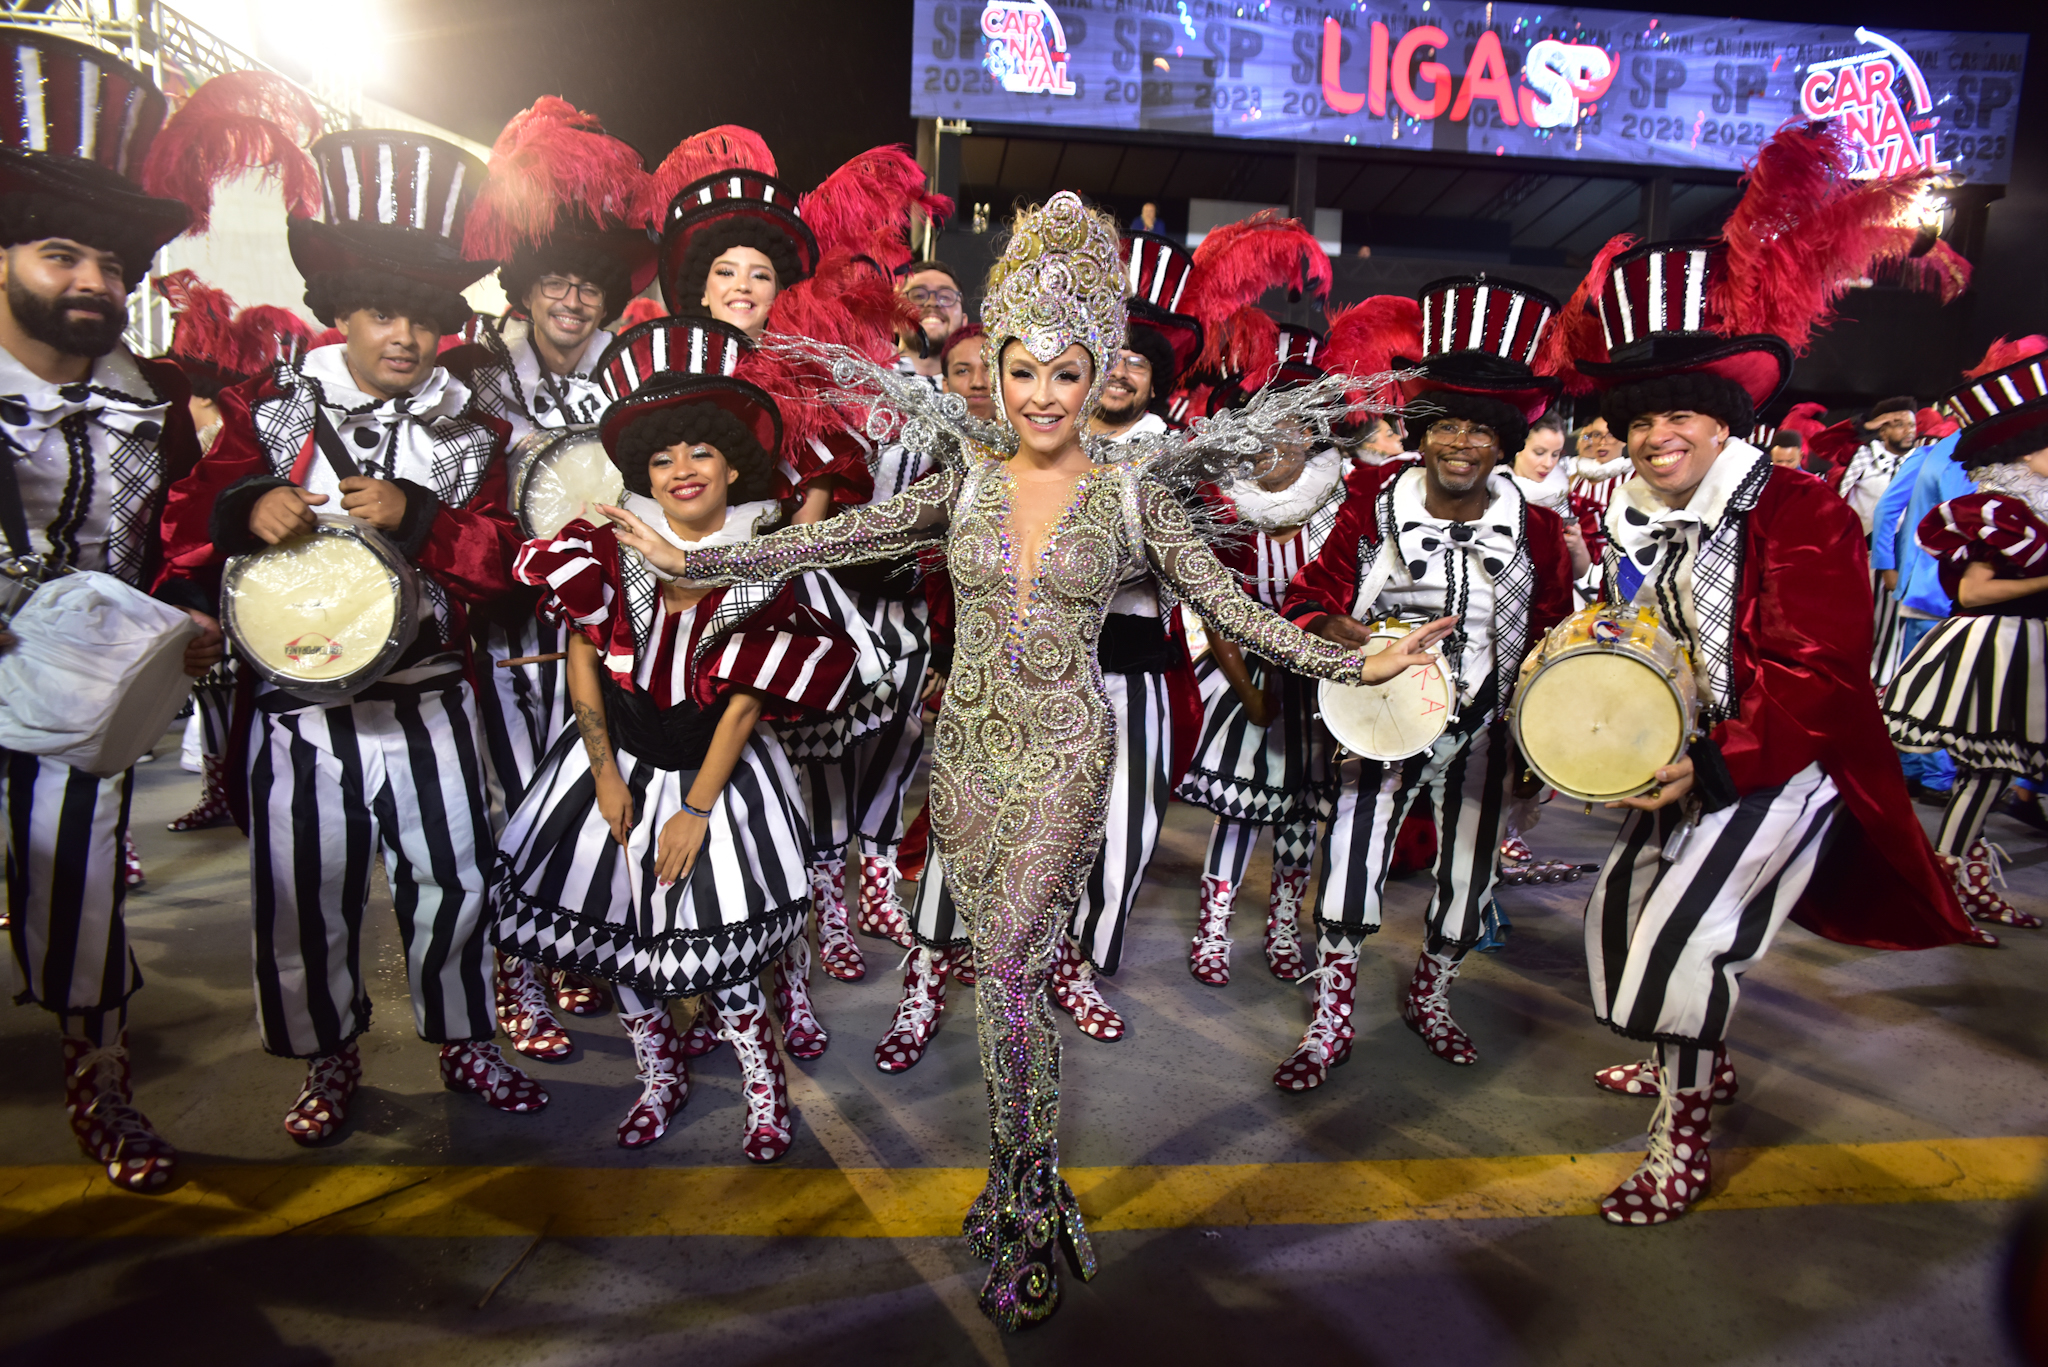 Carla Diaz no Carnaval de São Paulo